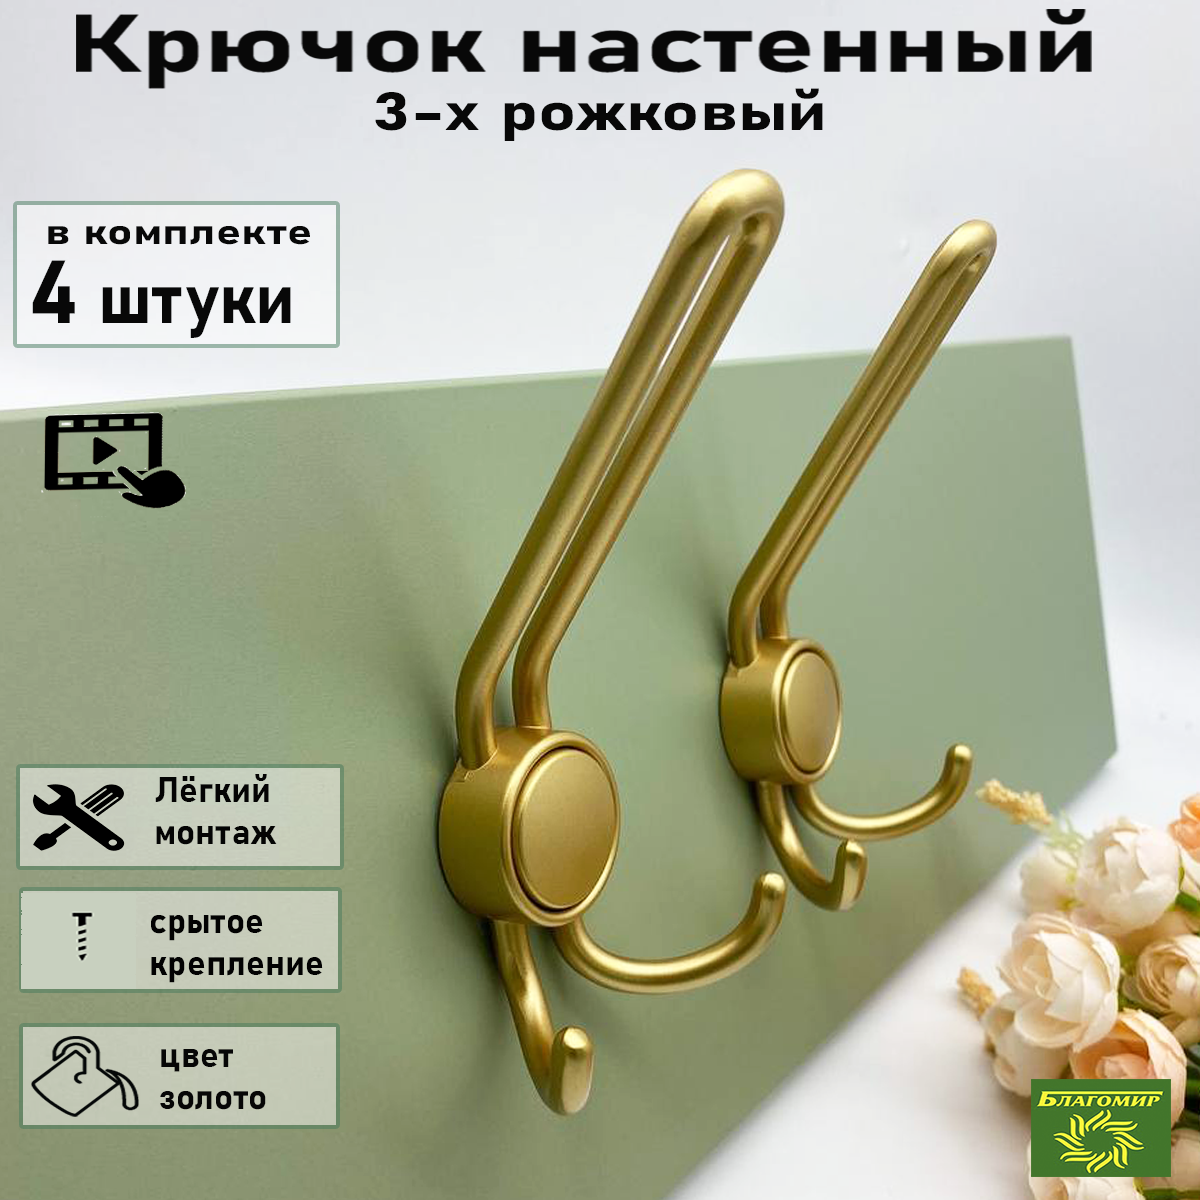 Крючок мебельный Blago-mir 4 шт, металлический золотой, 3-х рожковый